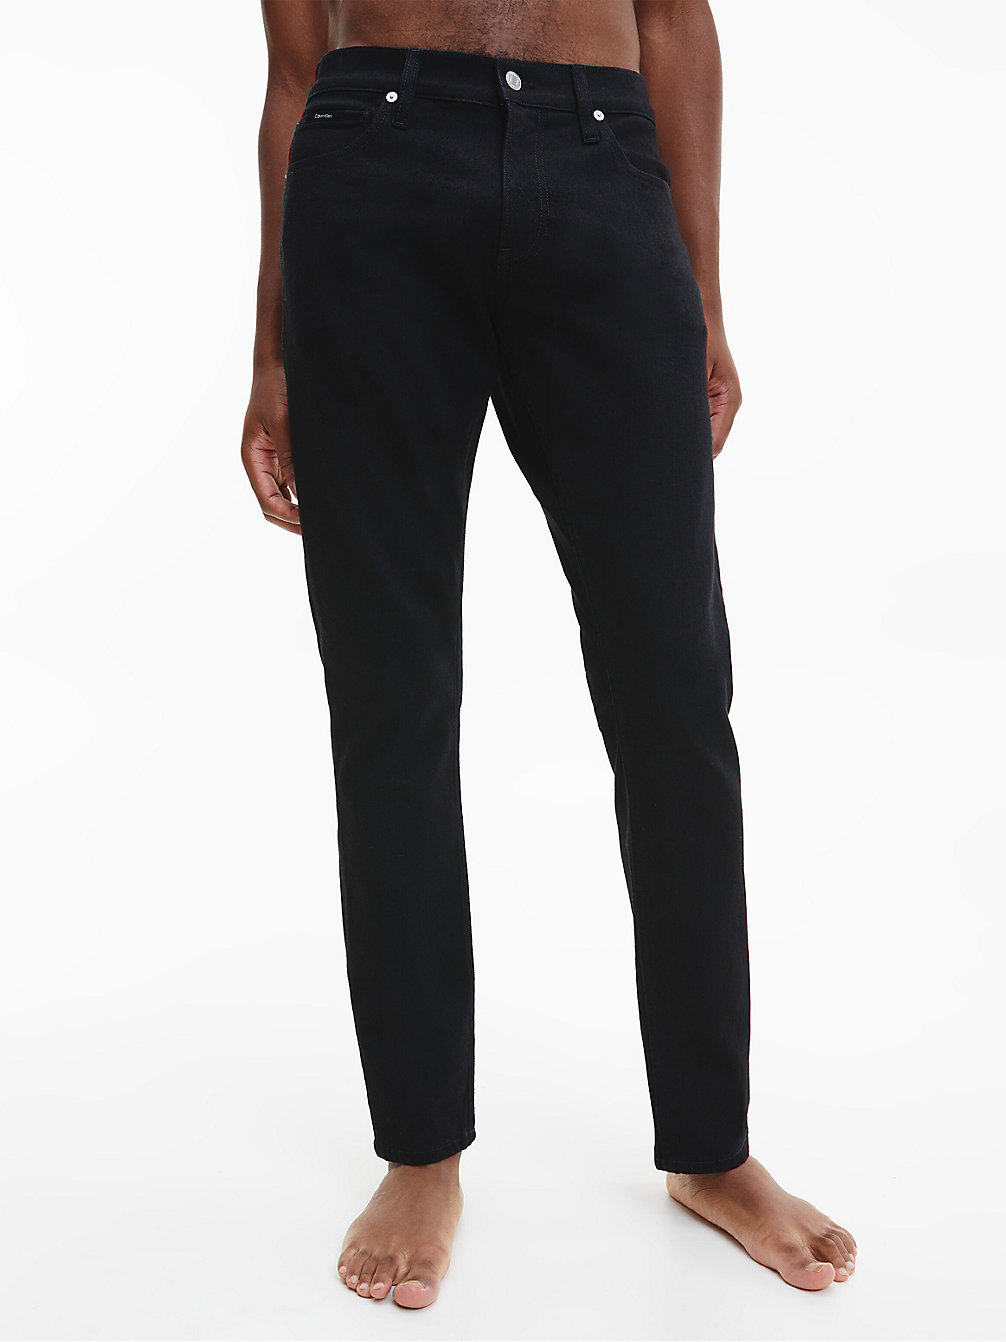 CK BLACK Slim Jeans undefined Herren Calvin Klein